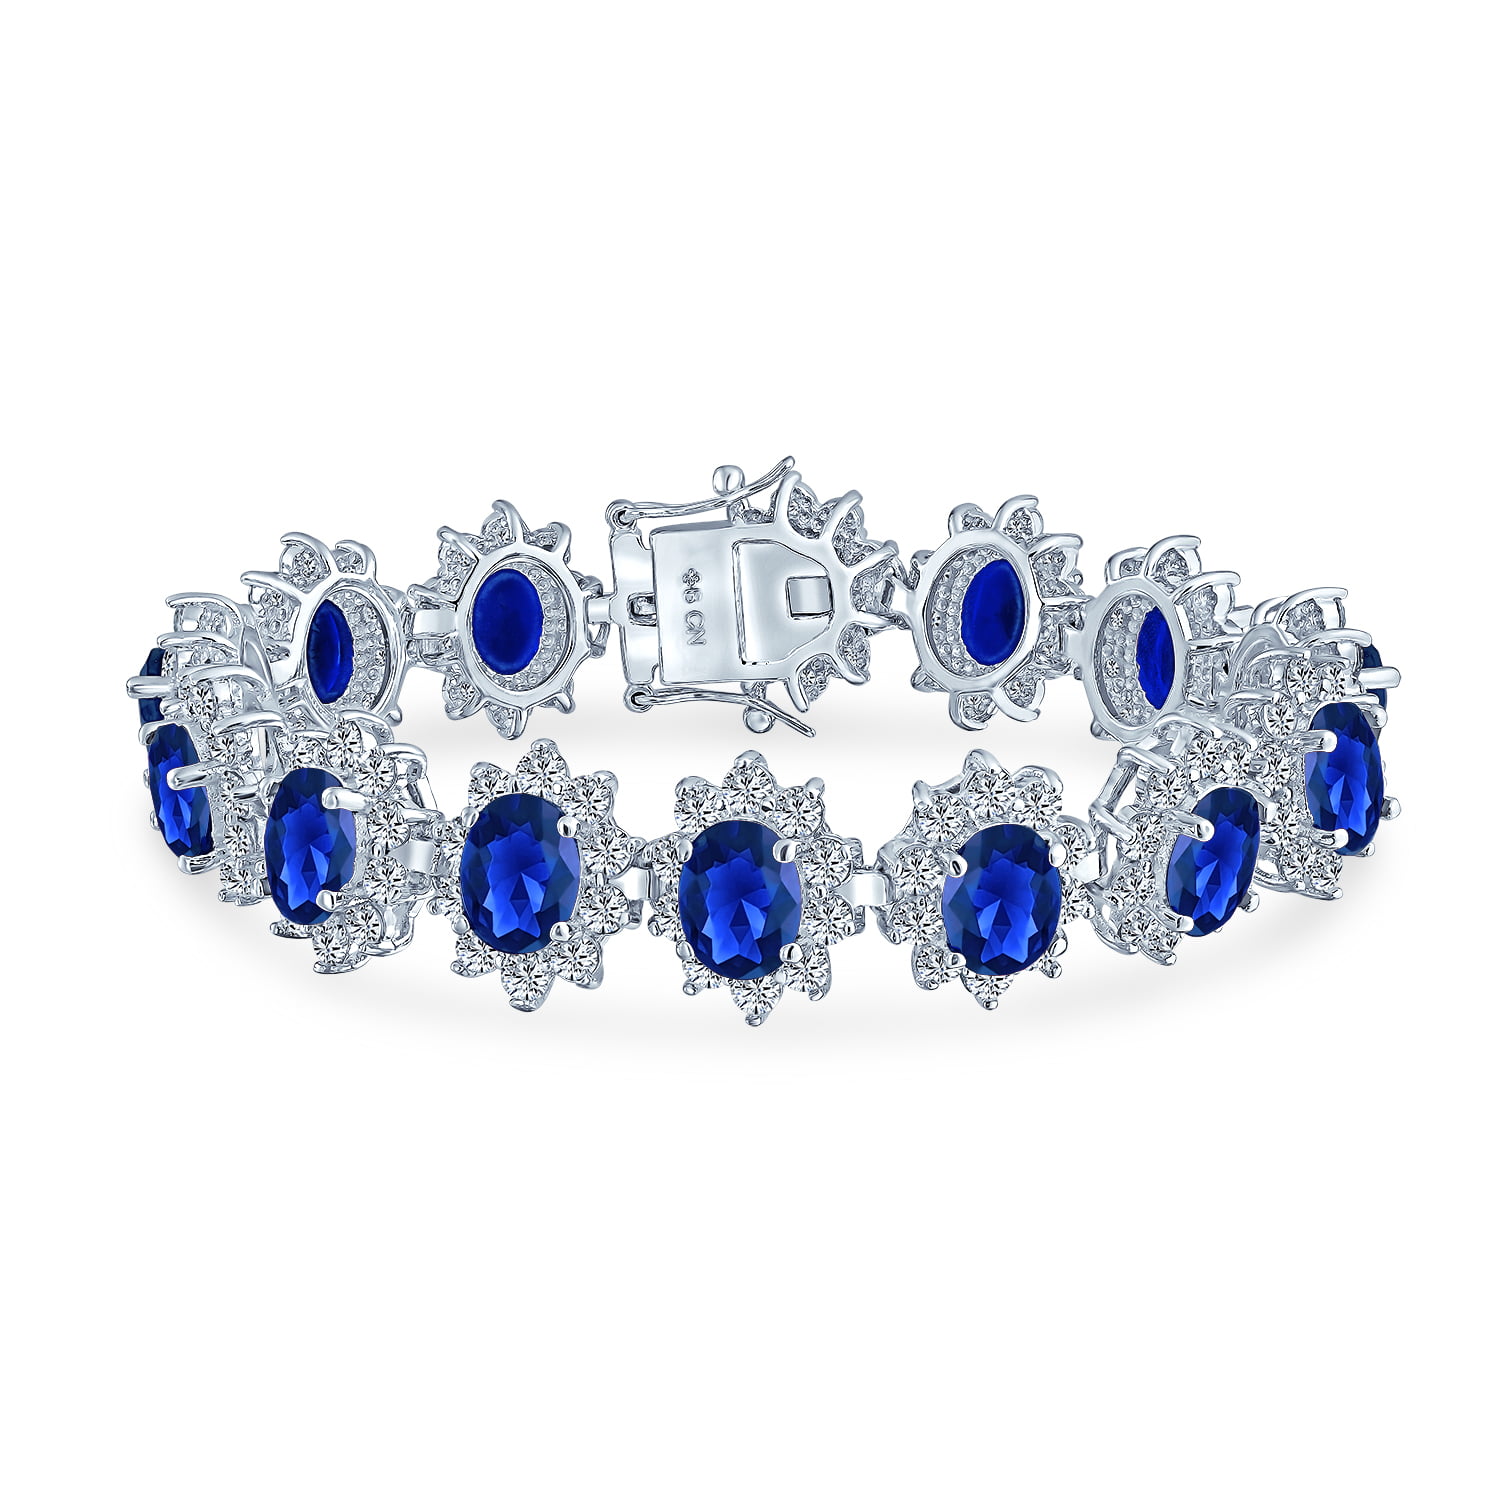 Diamond Tennis Bracelet Pricing : r/Diamonds